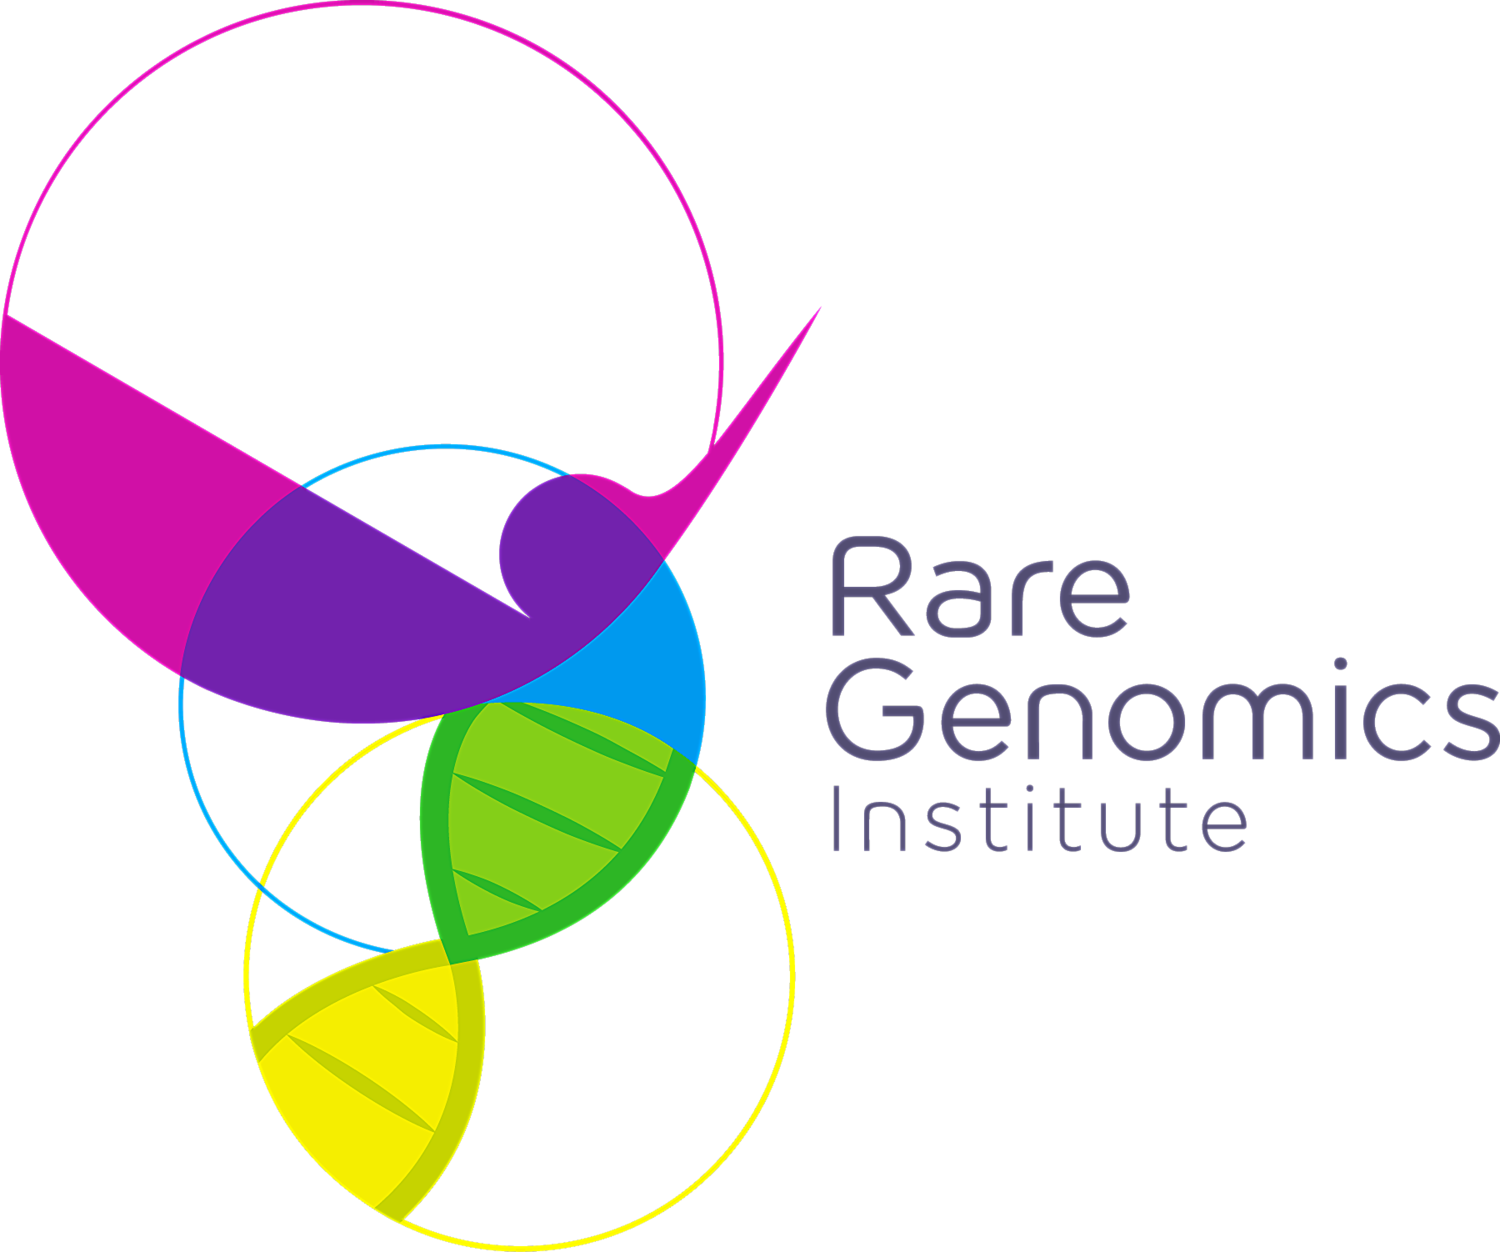 Rare Genomics Institute logo